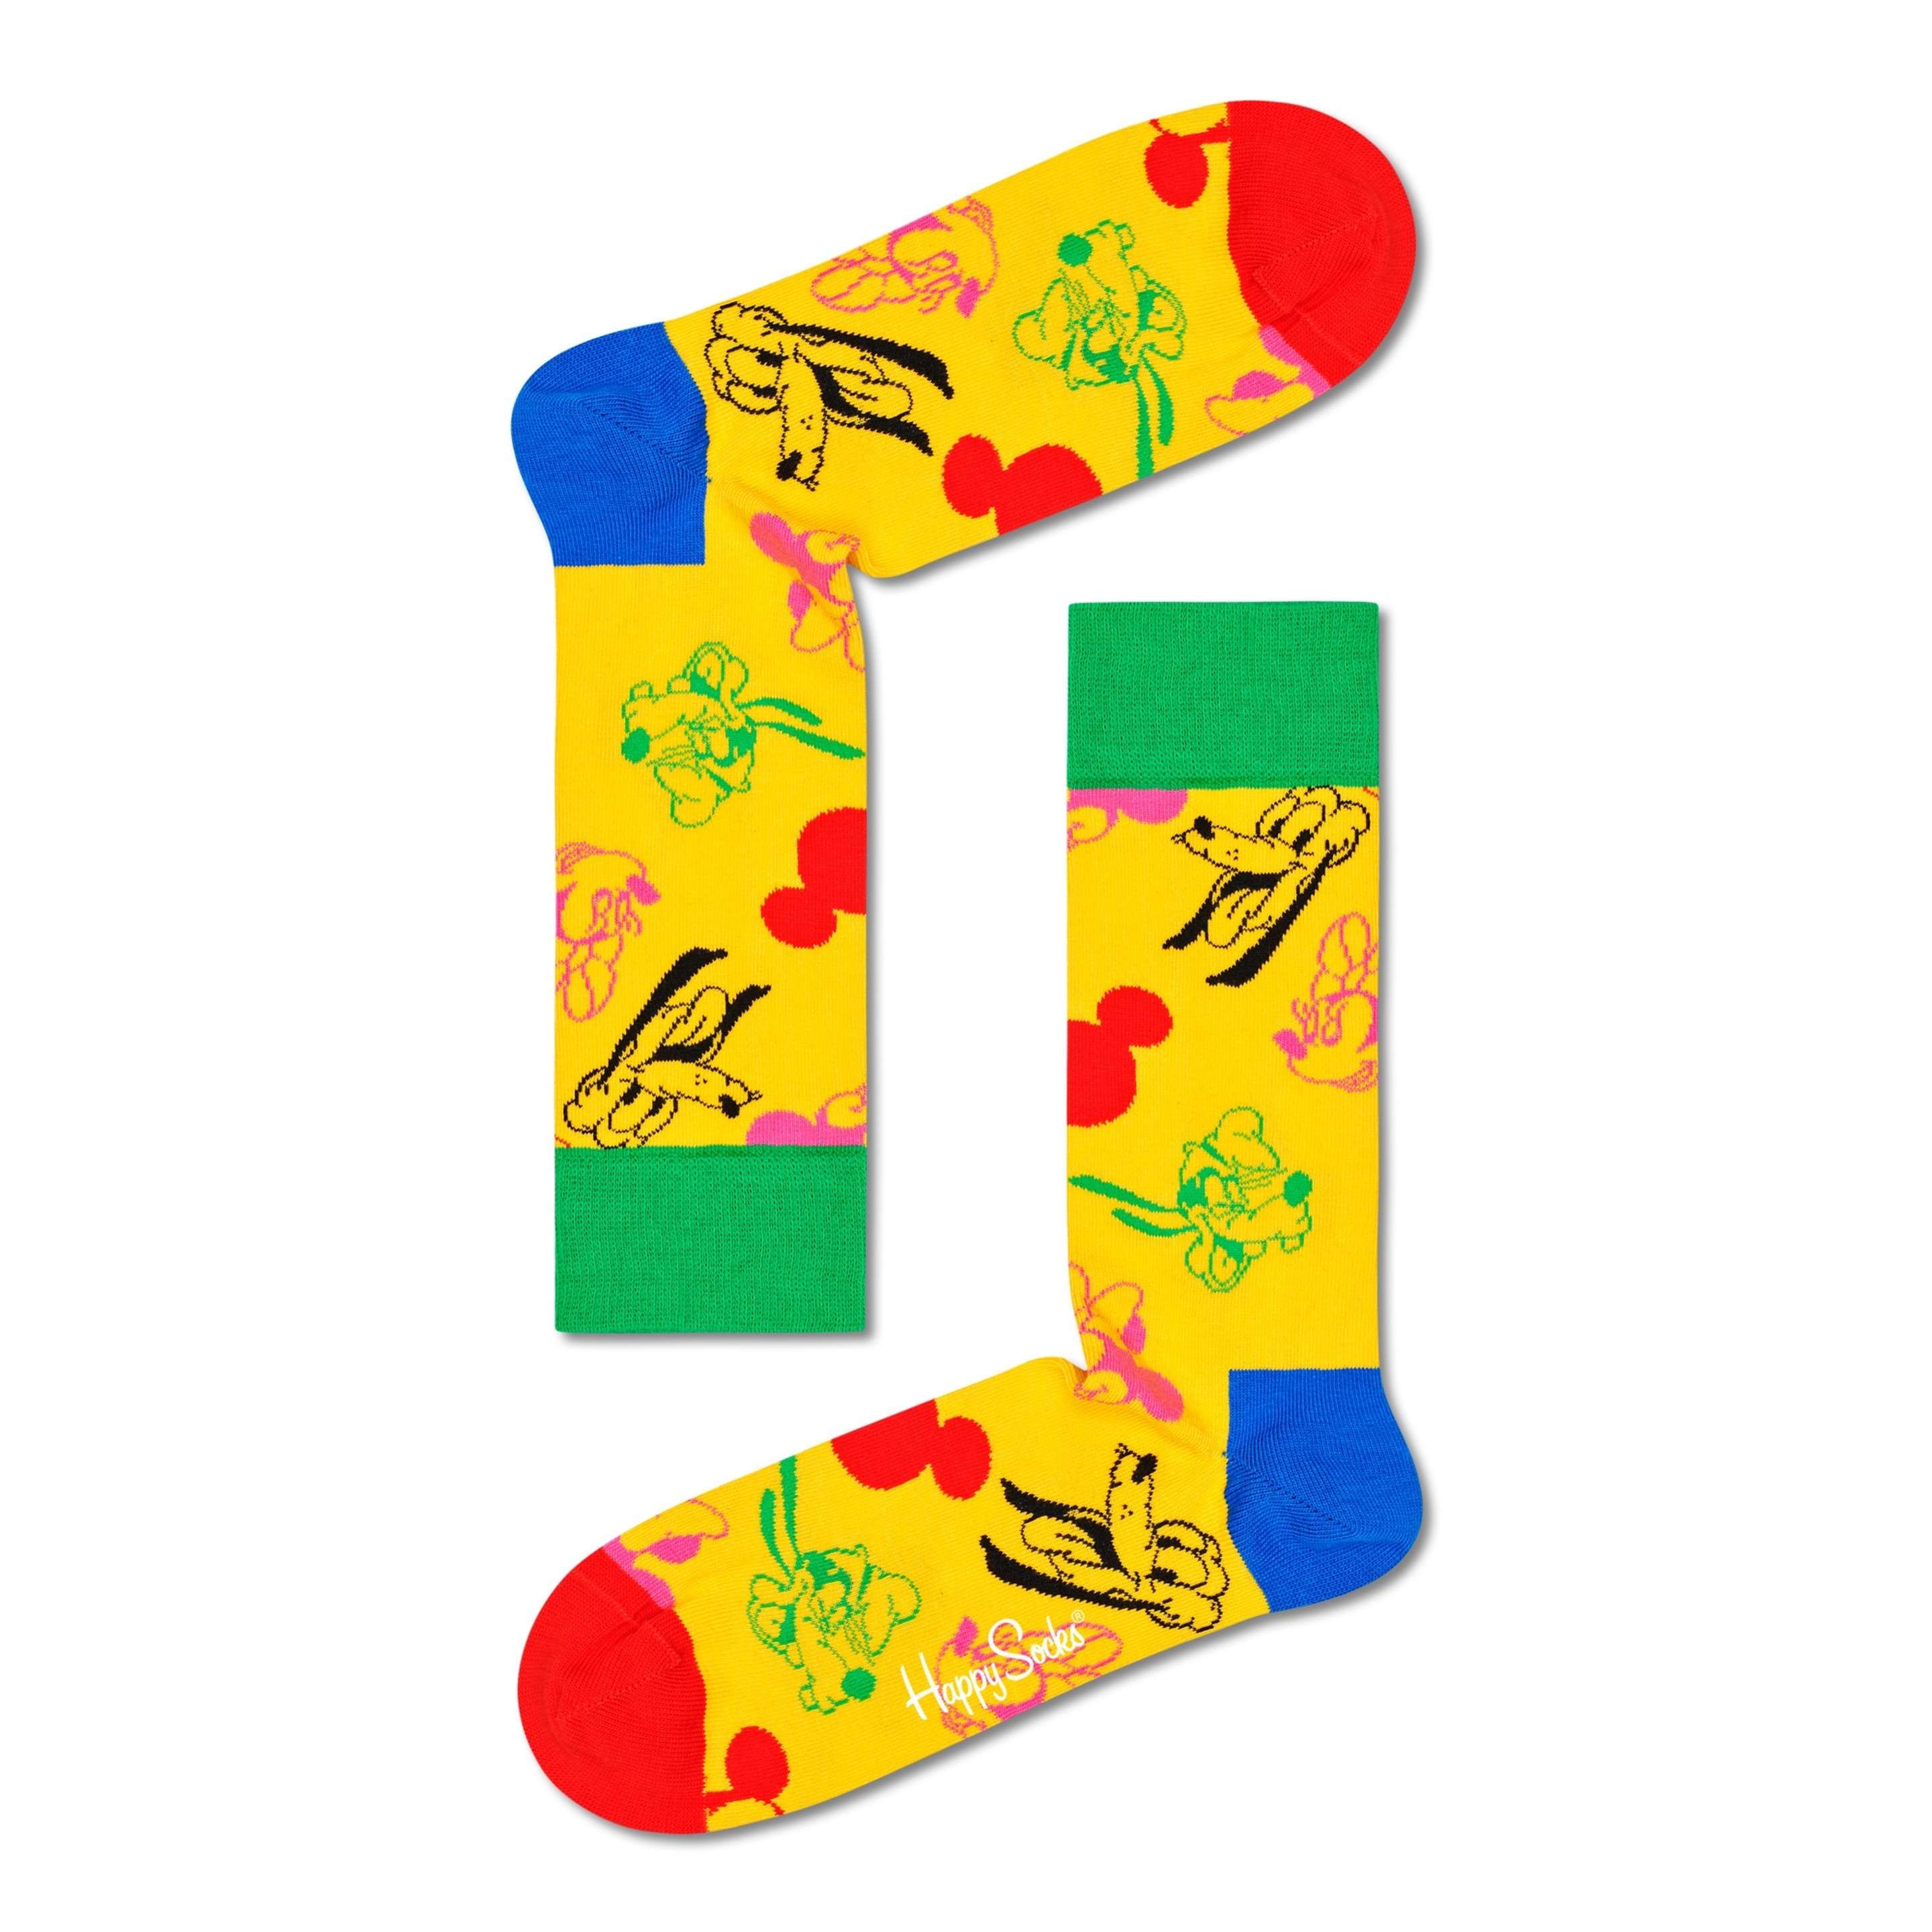 Par De Calcetines Happy Socks All Smiles - multicolor - 